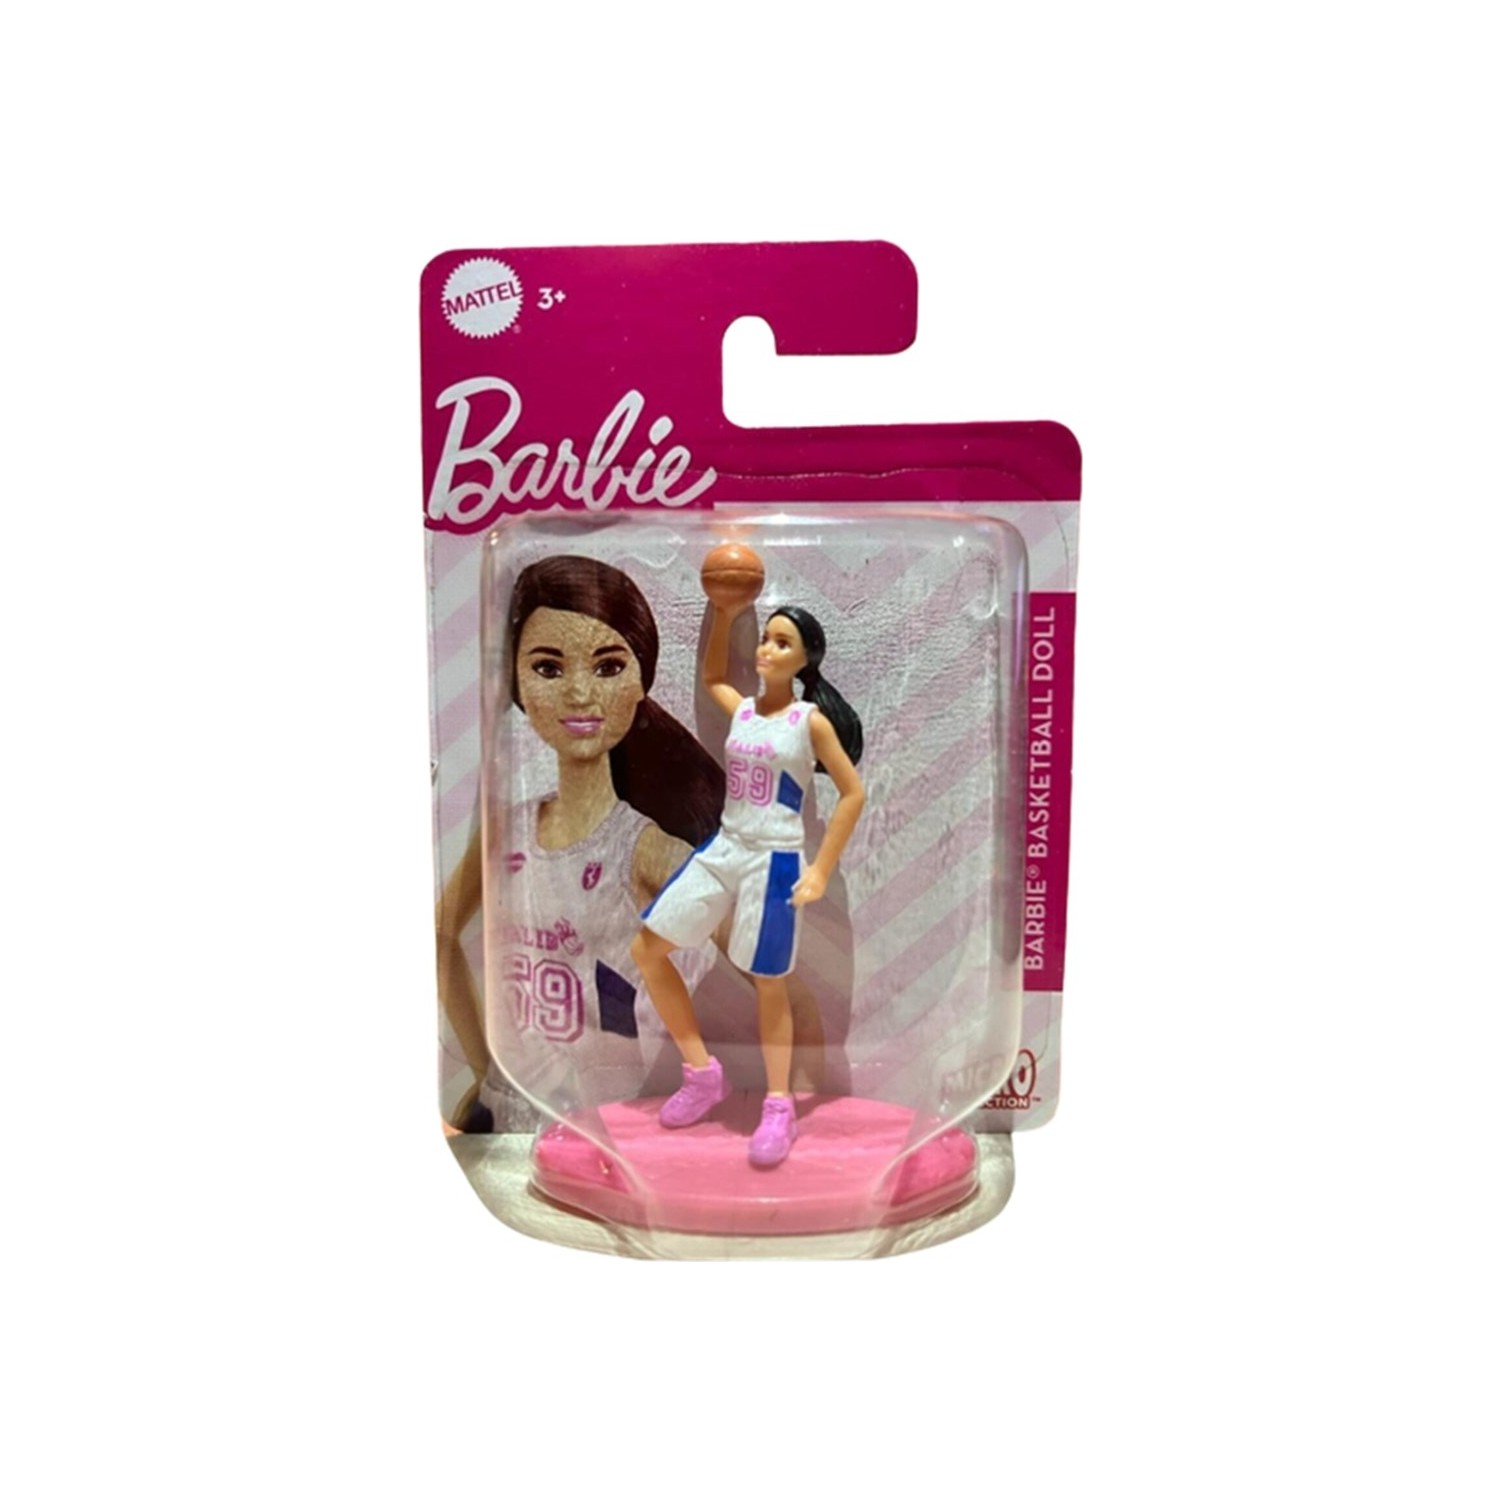 Кукла Barbie баскетболистка HCH19 барби кукла для вечеринки кожаная одежда юбка аксессуары для 11 5 дюймовых кукол барби и кукол bjd игрушки для девочек бесплатно высокие кабл